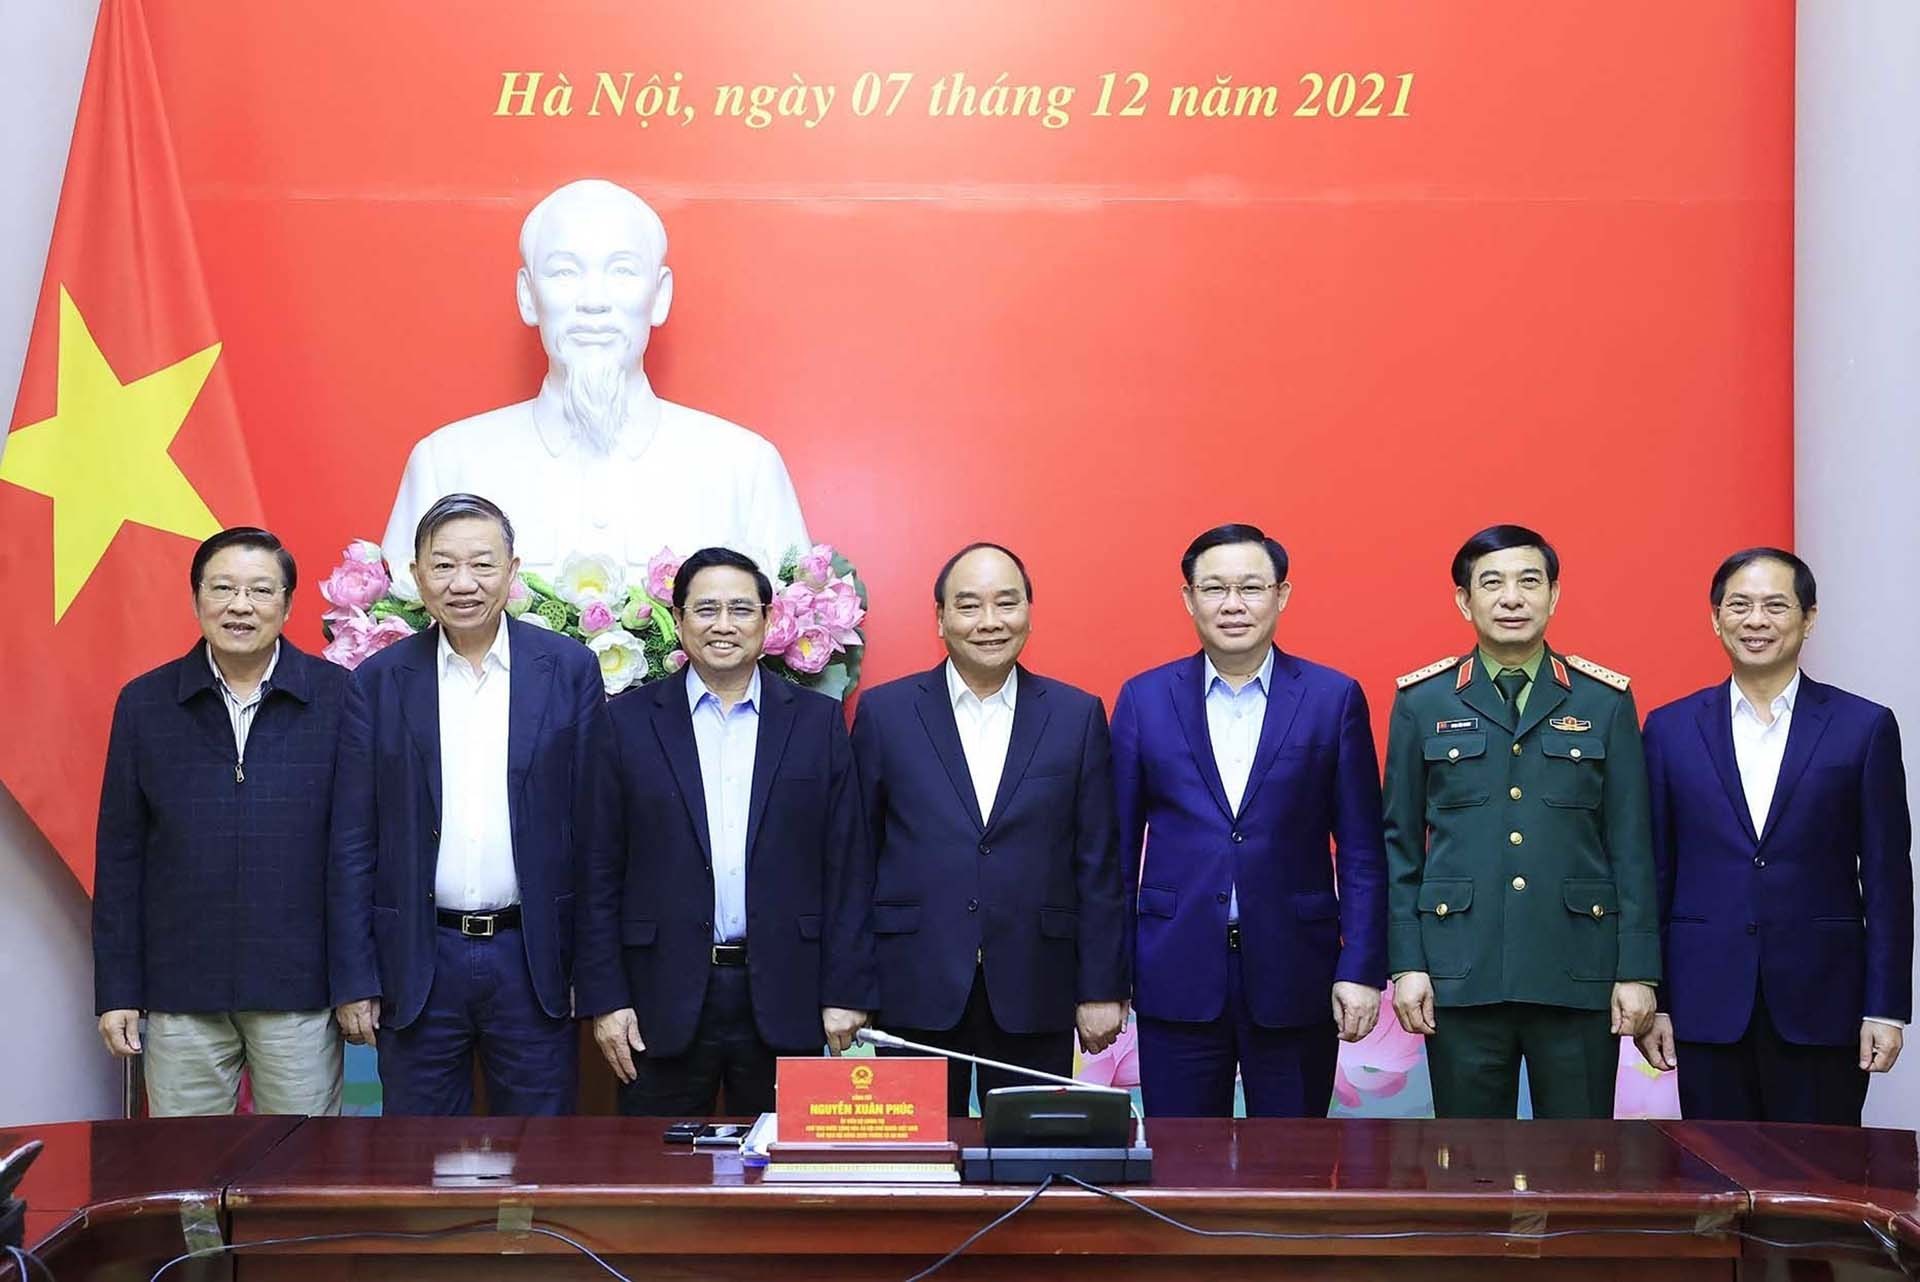 Đồng chí Nguyễn Xuân Phúc, Uỷ viên Bộ Chính trị, Chủ tịch nước, Chủ tịch Hội đồng Quốc phòng và An ninh, Thống lĩnh các lực lượng vũ trang nhân dân cùng các thành viên Hội đồng Quốc phòng và An ninh nhiệm kỳ 2021-2026. (Nguồn: TTXVN)